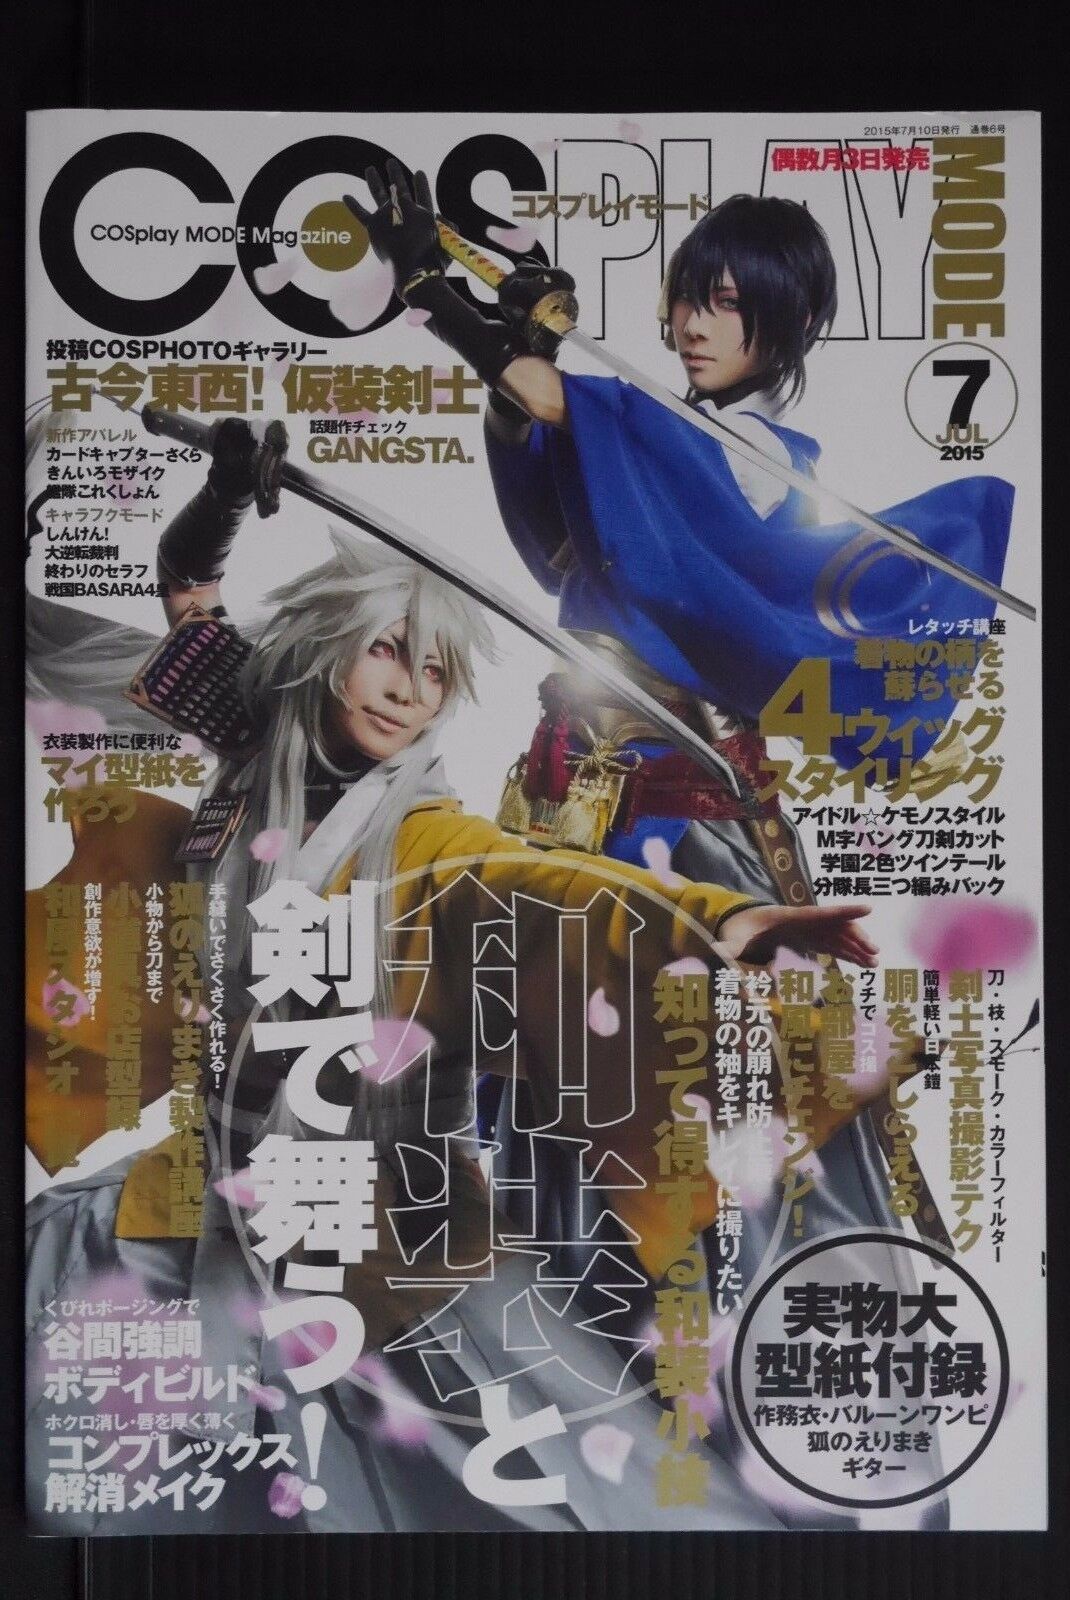 Japan Magazine: Cosplay Mode 2015 July "japanese Clothing" Touken Ranbu